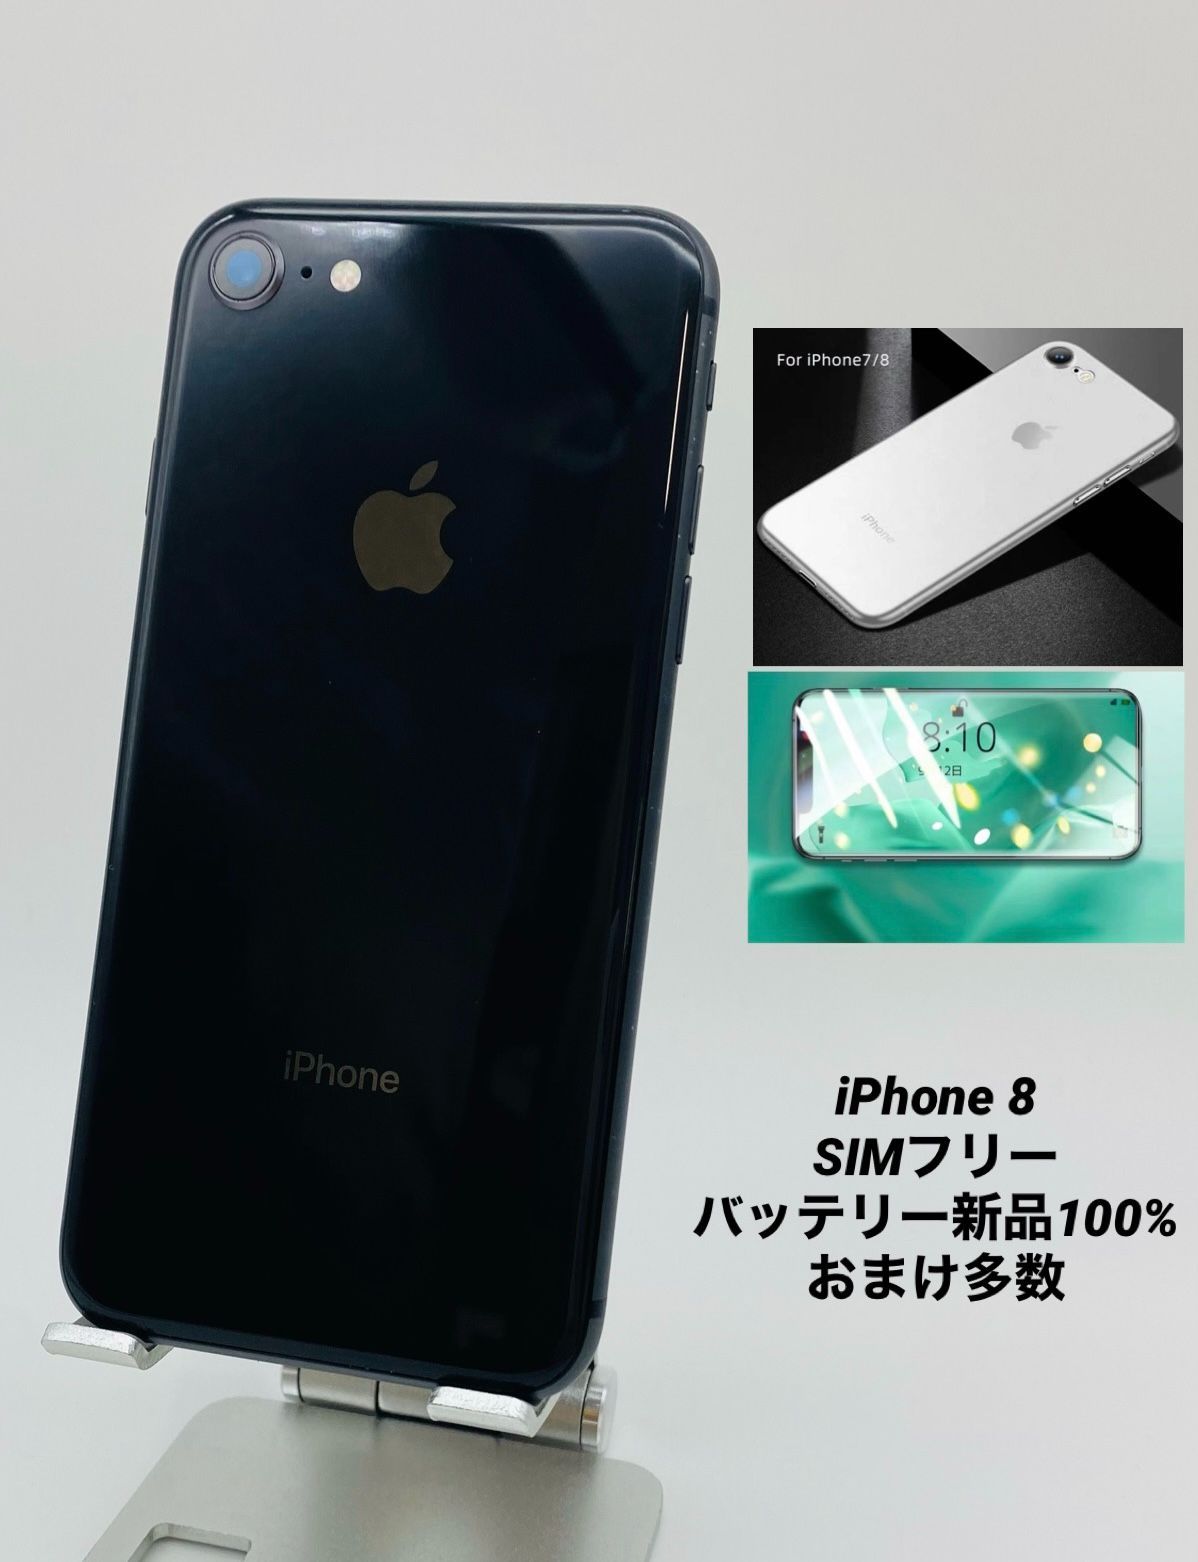 【定番100%新品】iPhone 8 64 gbバッテリ:100%新品sim:フリー 【美品】 スマートフォン本体